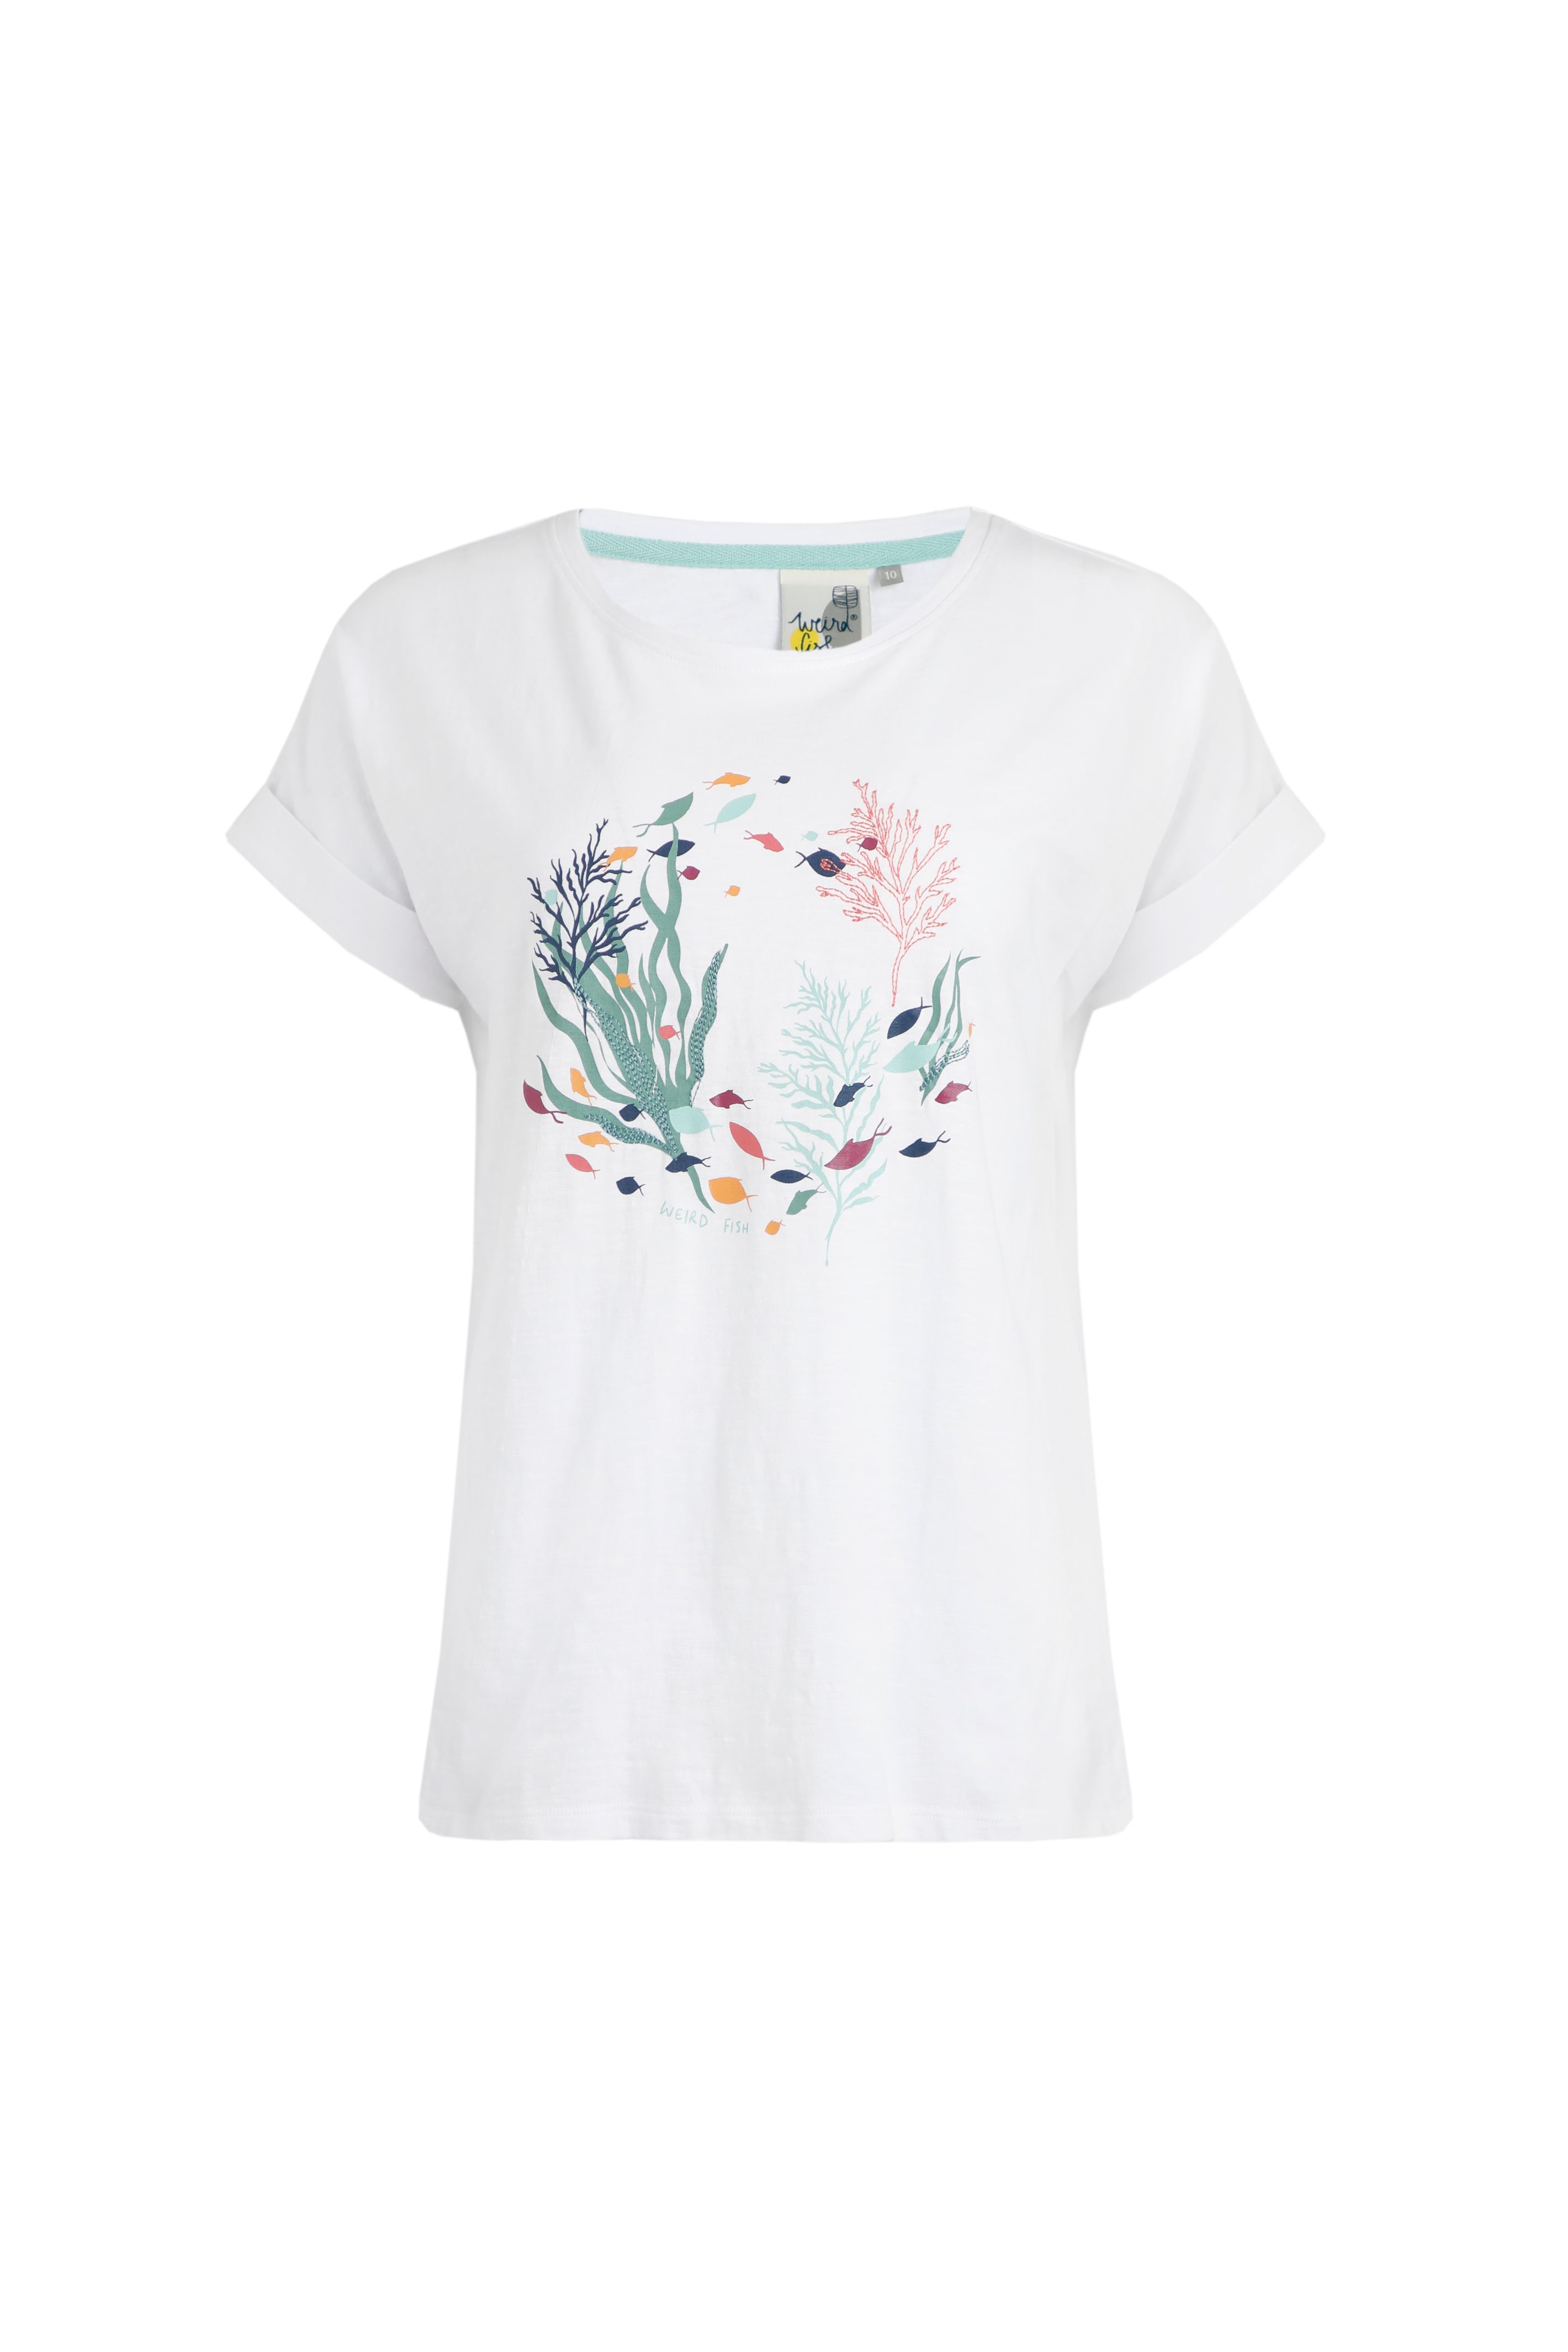 Reef Organic Graphic T-Shirt White | Weird Fish